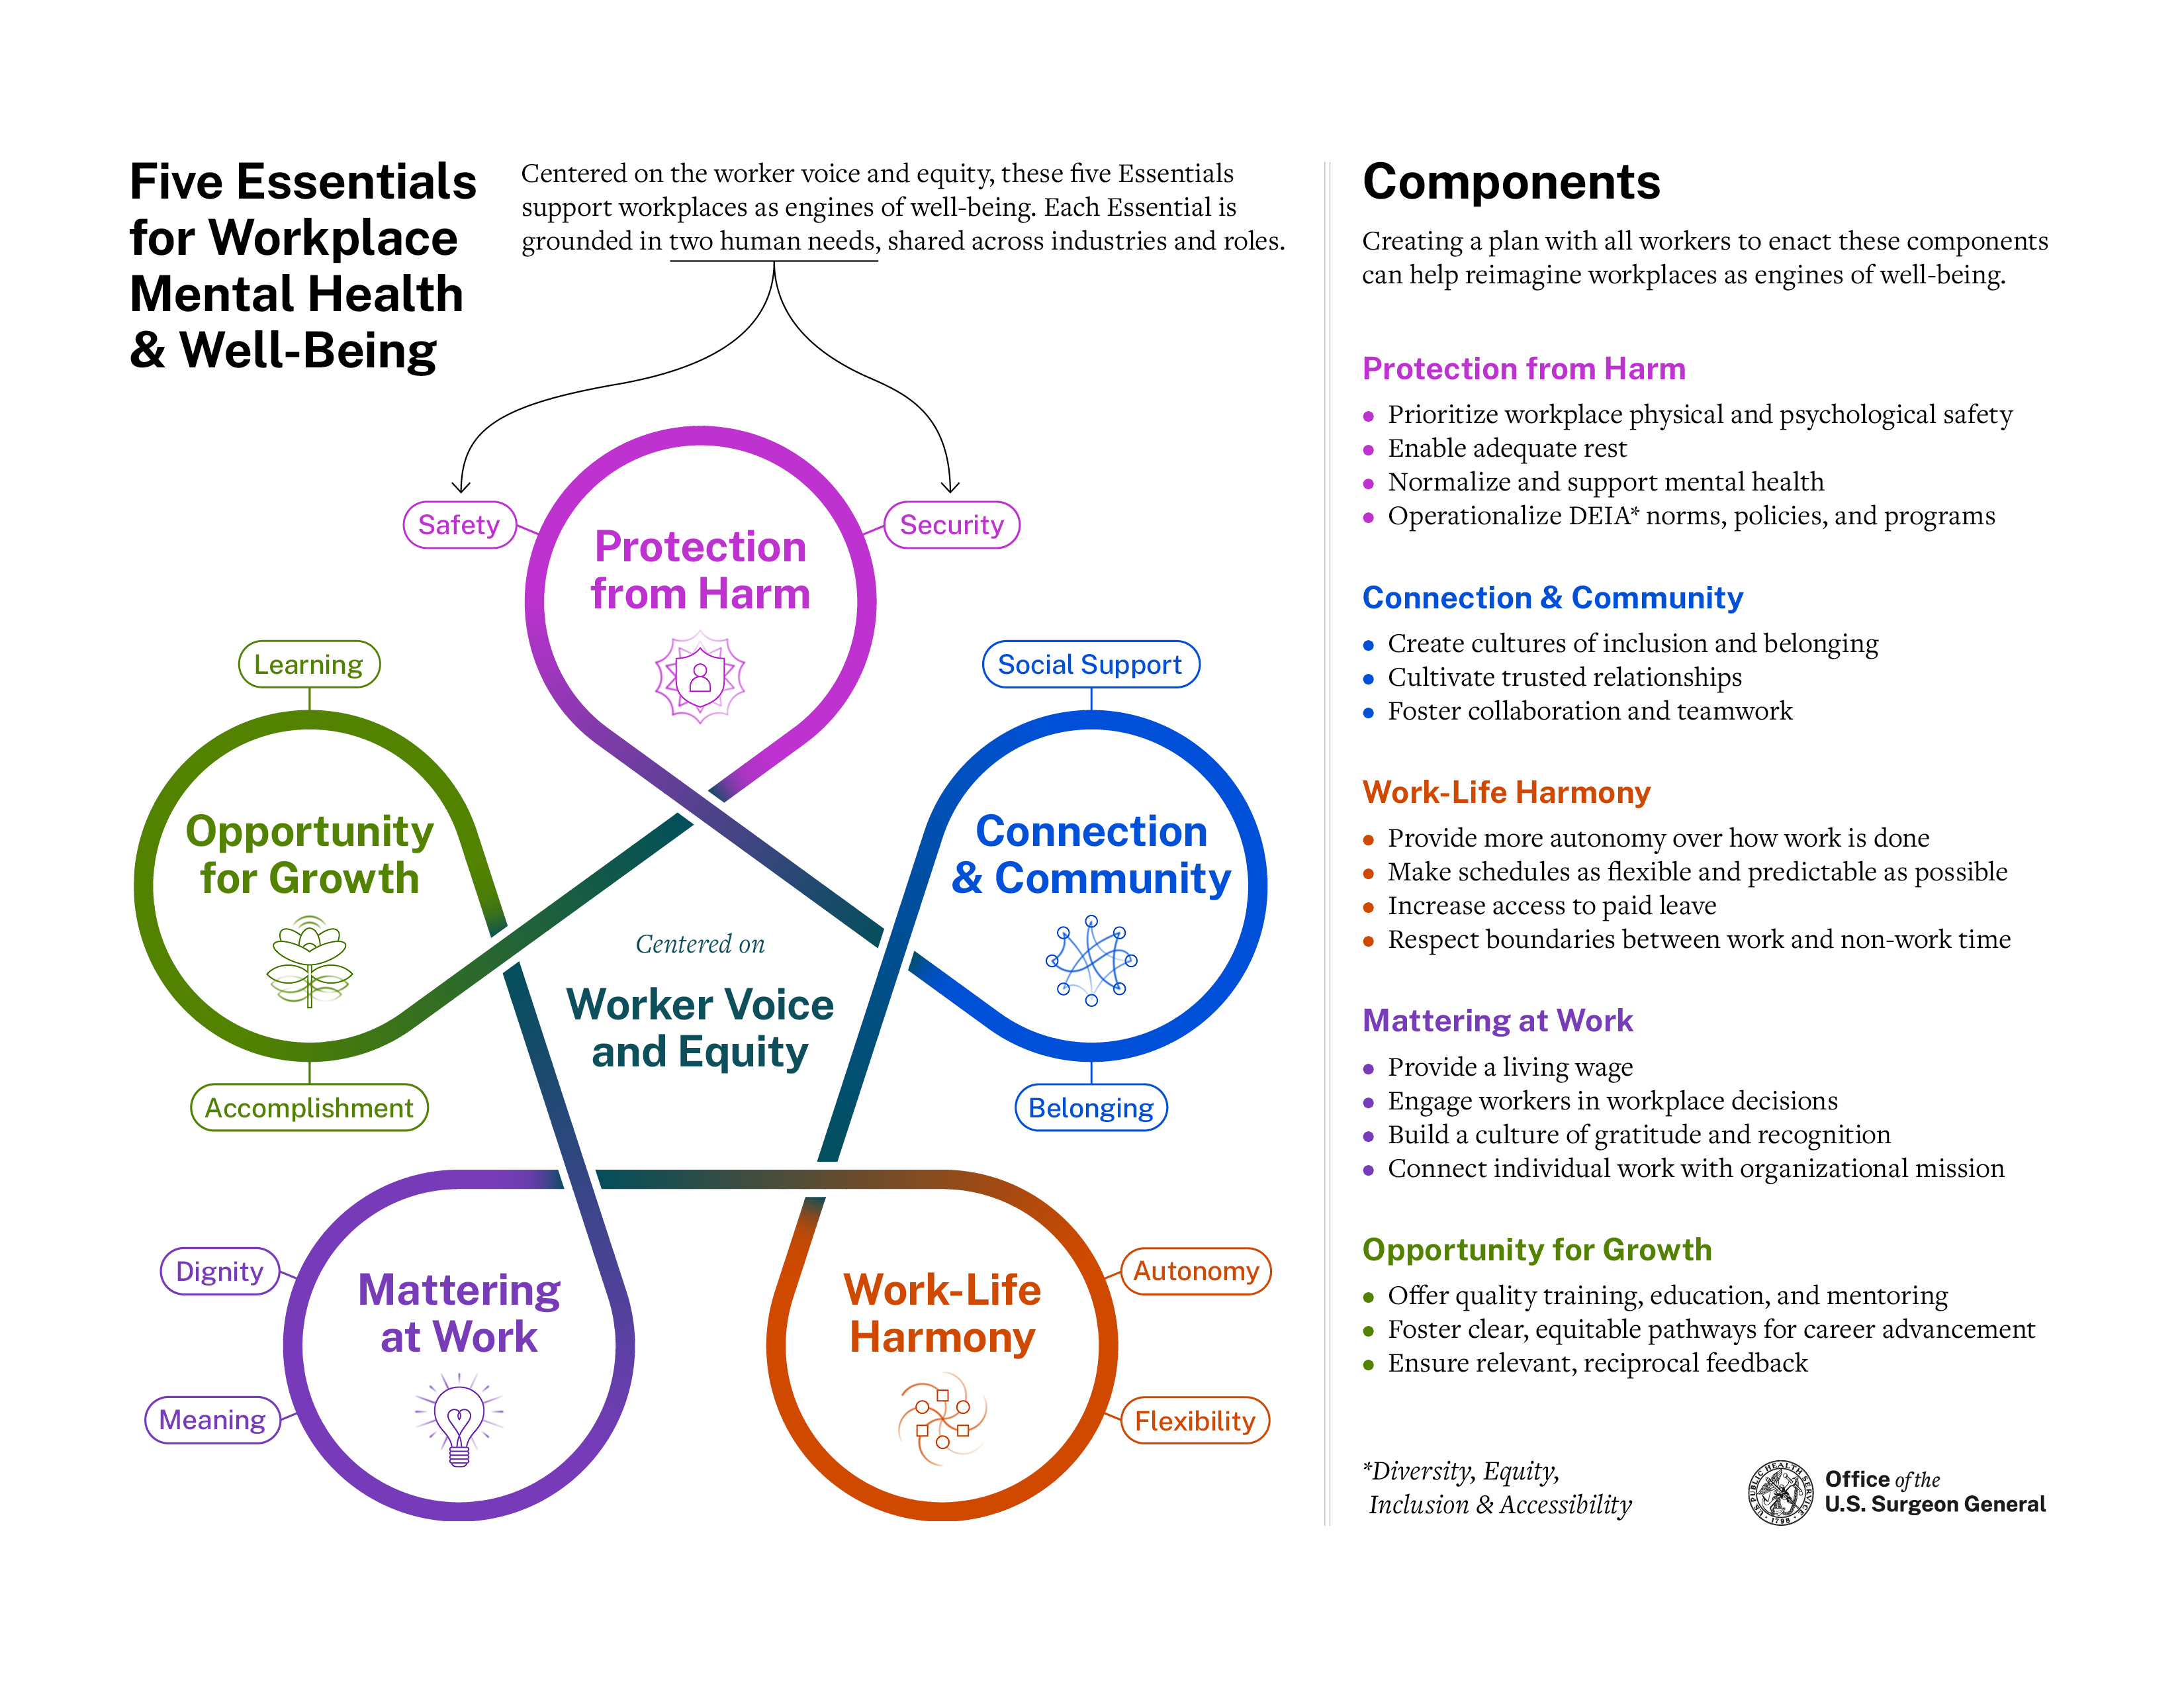 Đồ họa Workplace Framework do Surgeon General phát hành để hỗ trợ sức khỏe tâm thần tại nơi làm việc